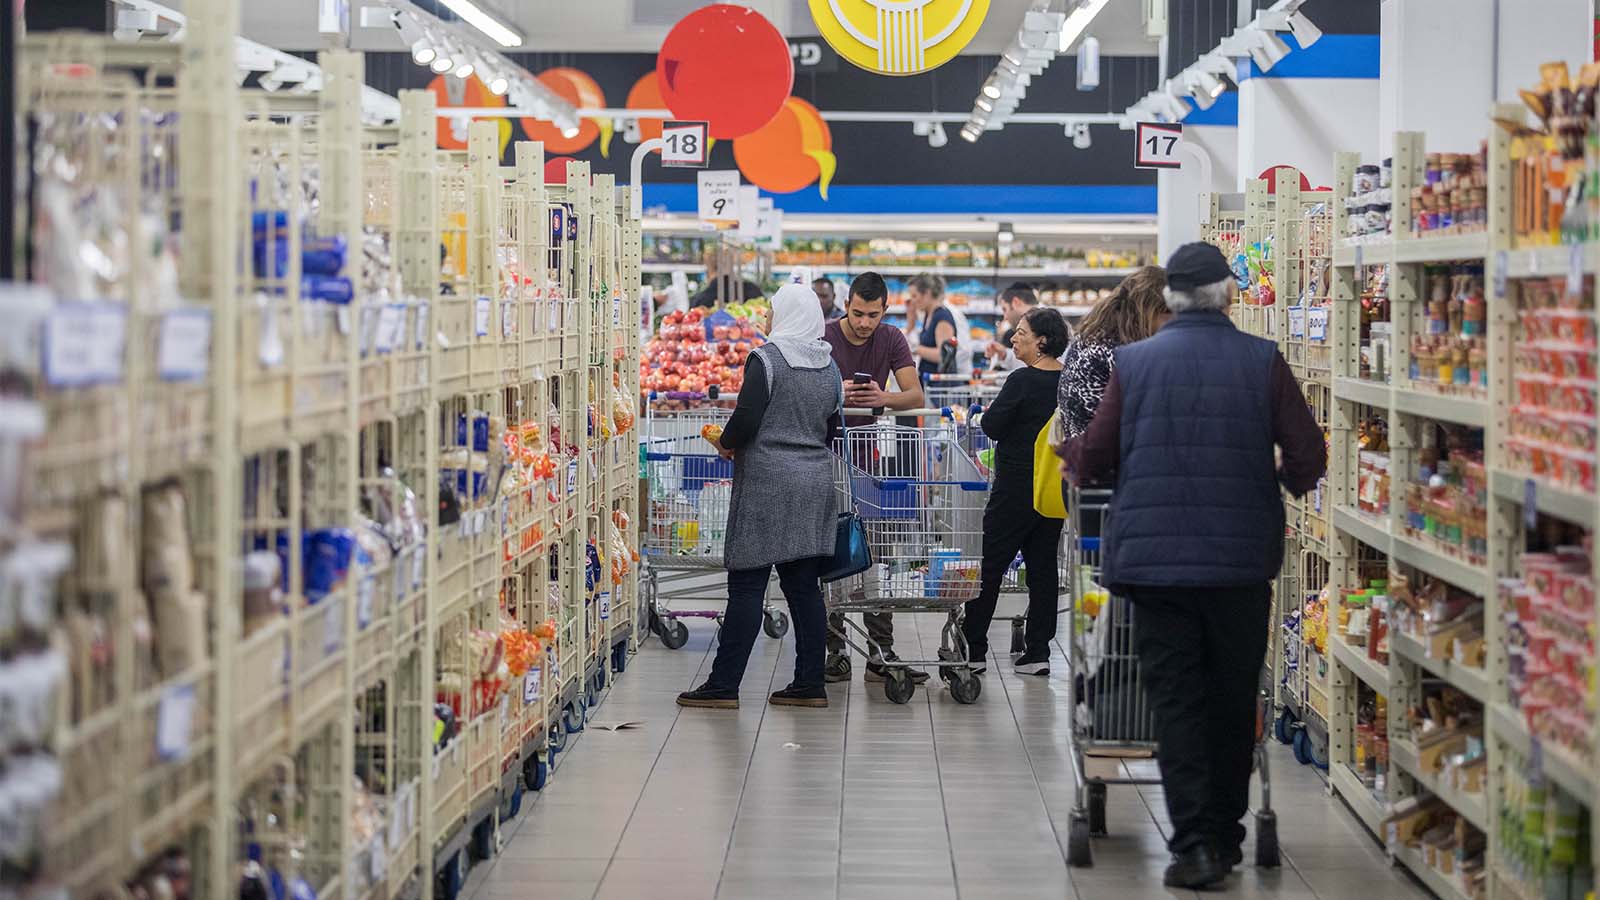 אנשים עושים קניות בסופרמרקט בירושלים. למצולמים אין קשר לכתבה (צילום: יונתן זינדל / פלאש90).